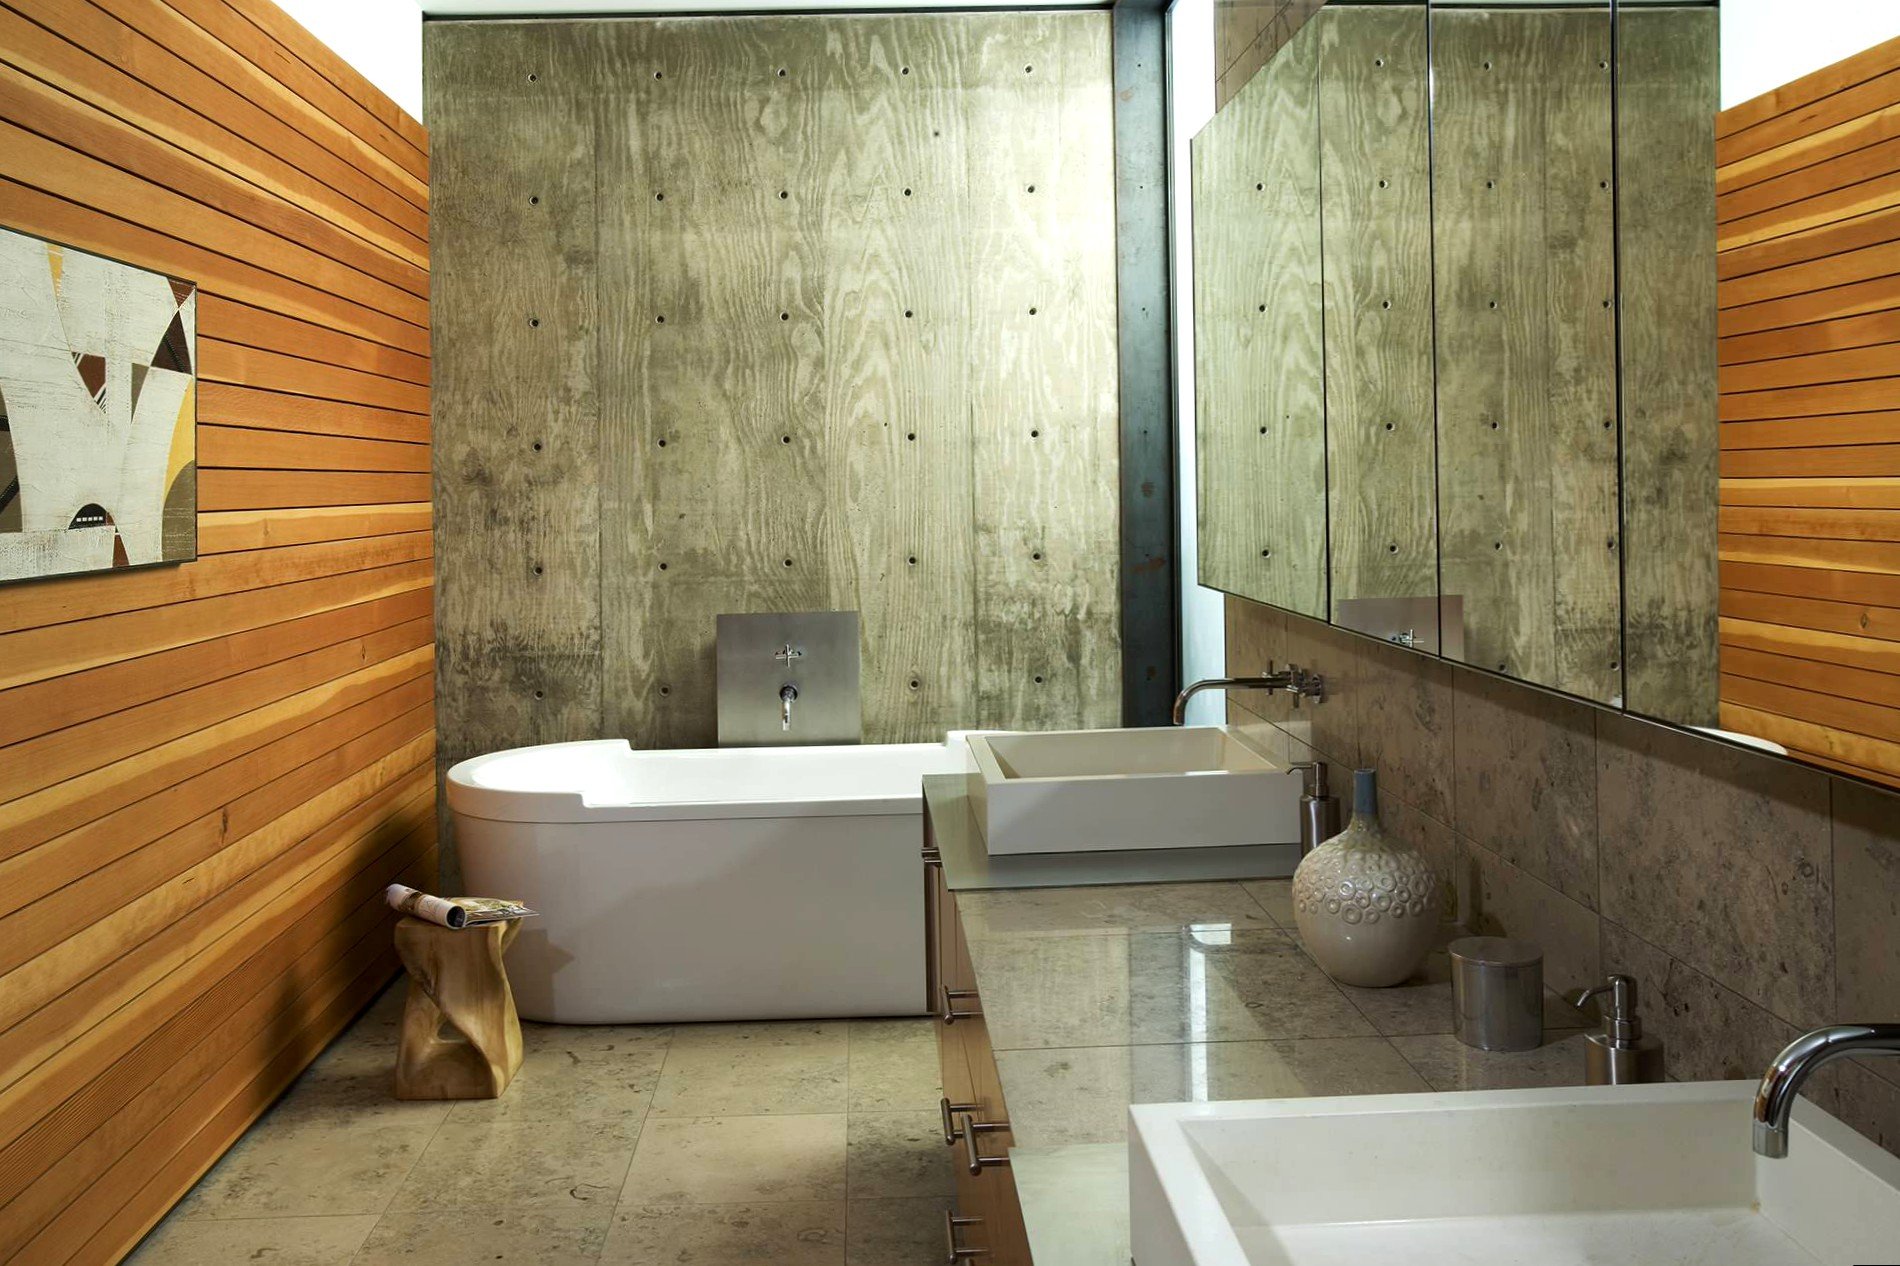 Ванная комната отделка стен панелями. Деревянные панели в ванной комнате. Отделка ванной под дерево. Дерево в интерьере ванной комнаты. Панели для ванной комнаты под дерево.